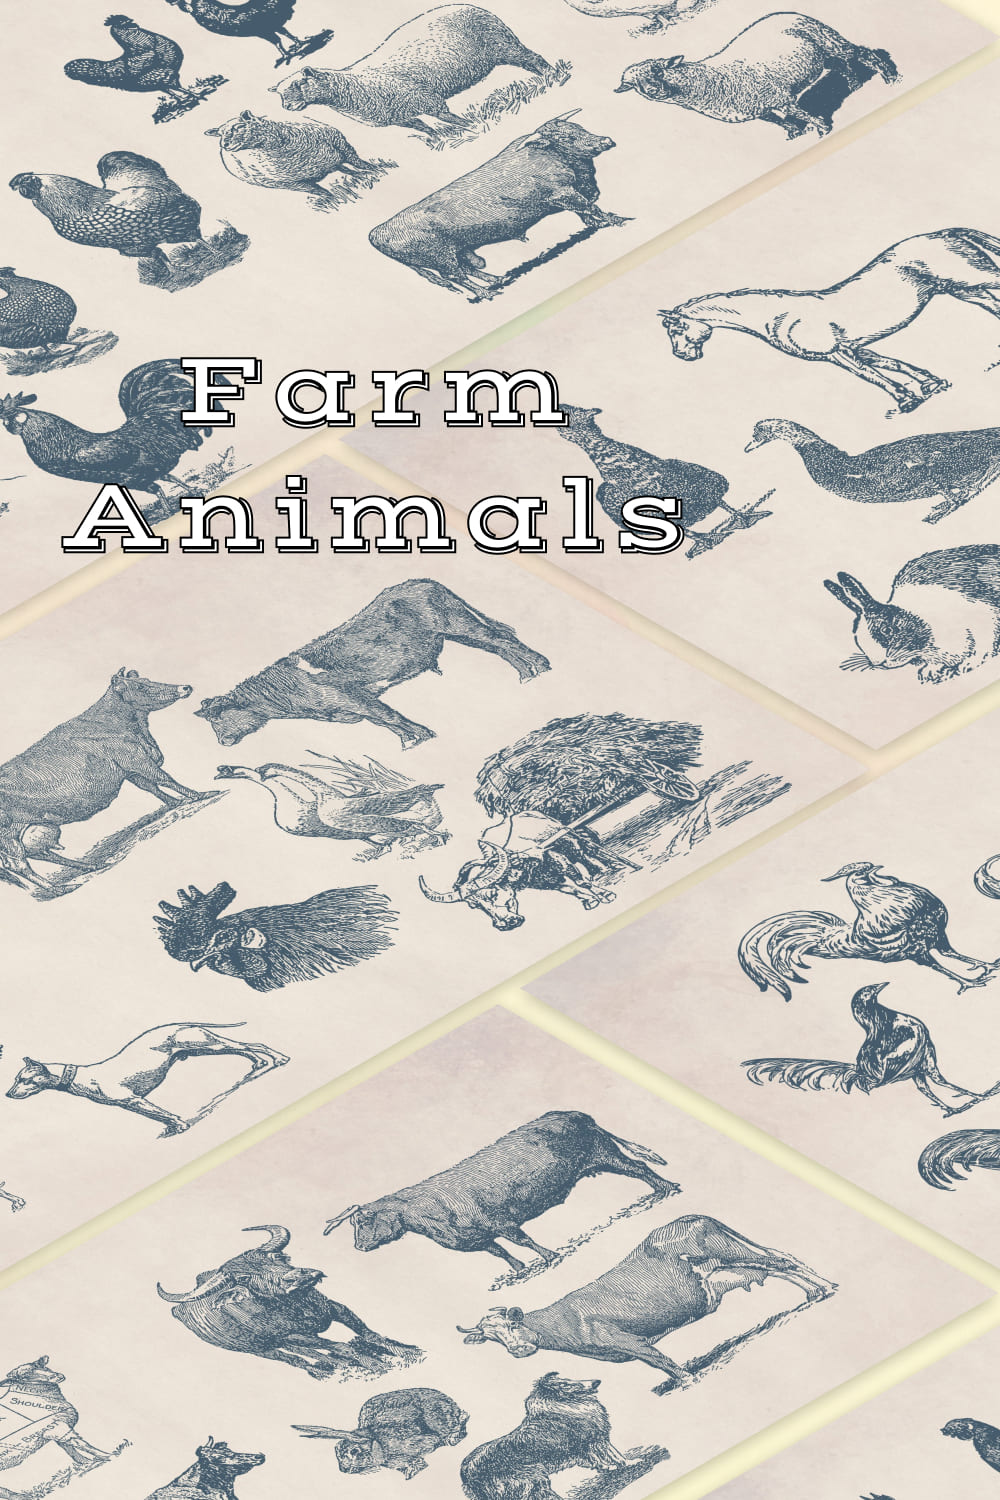 55 Vintage Farm Animals - Pinterest Image Preview.